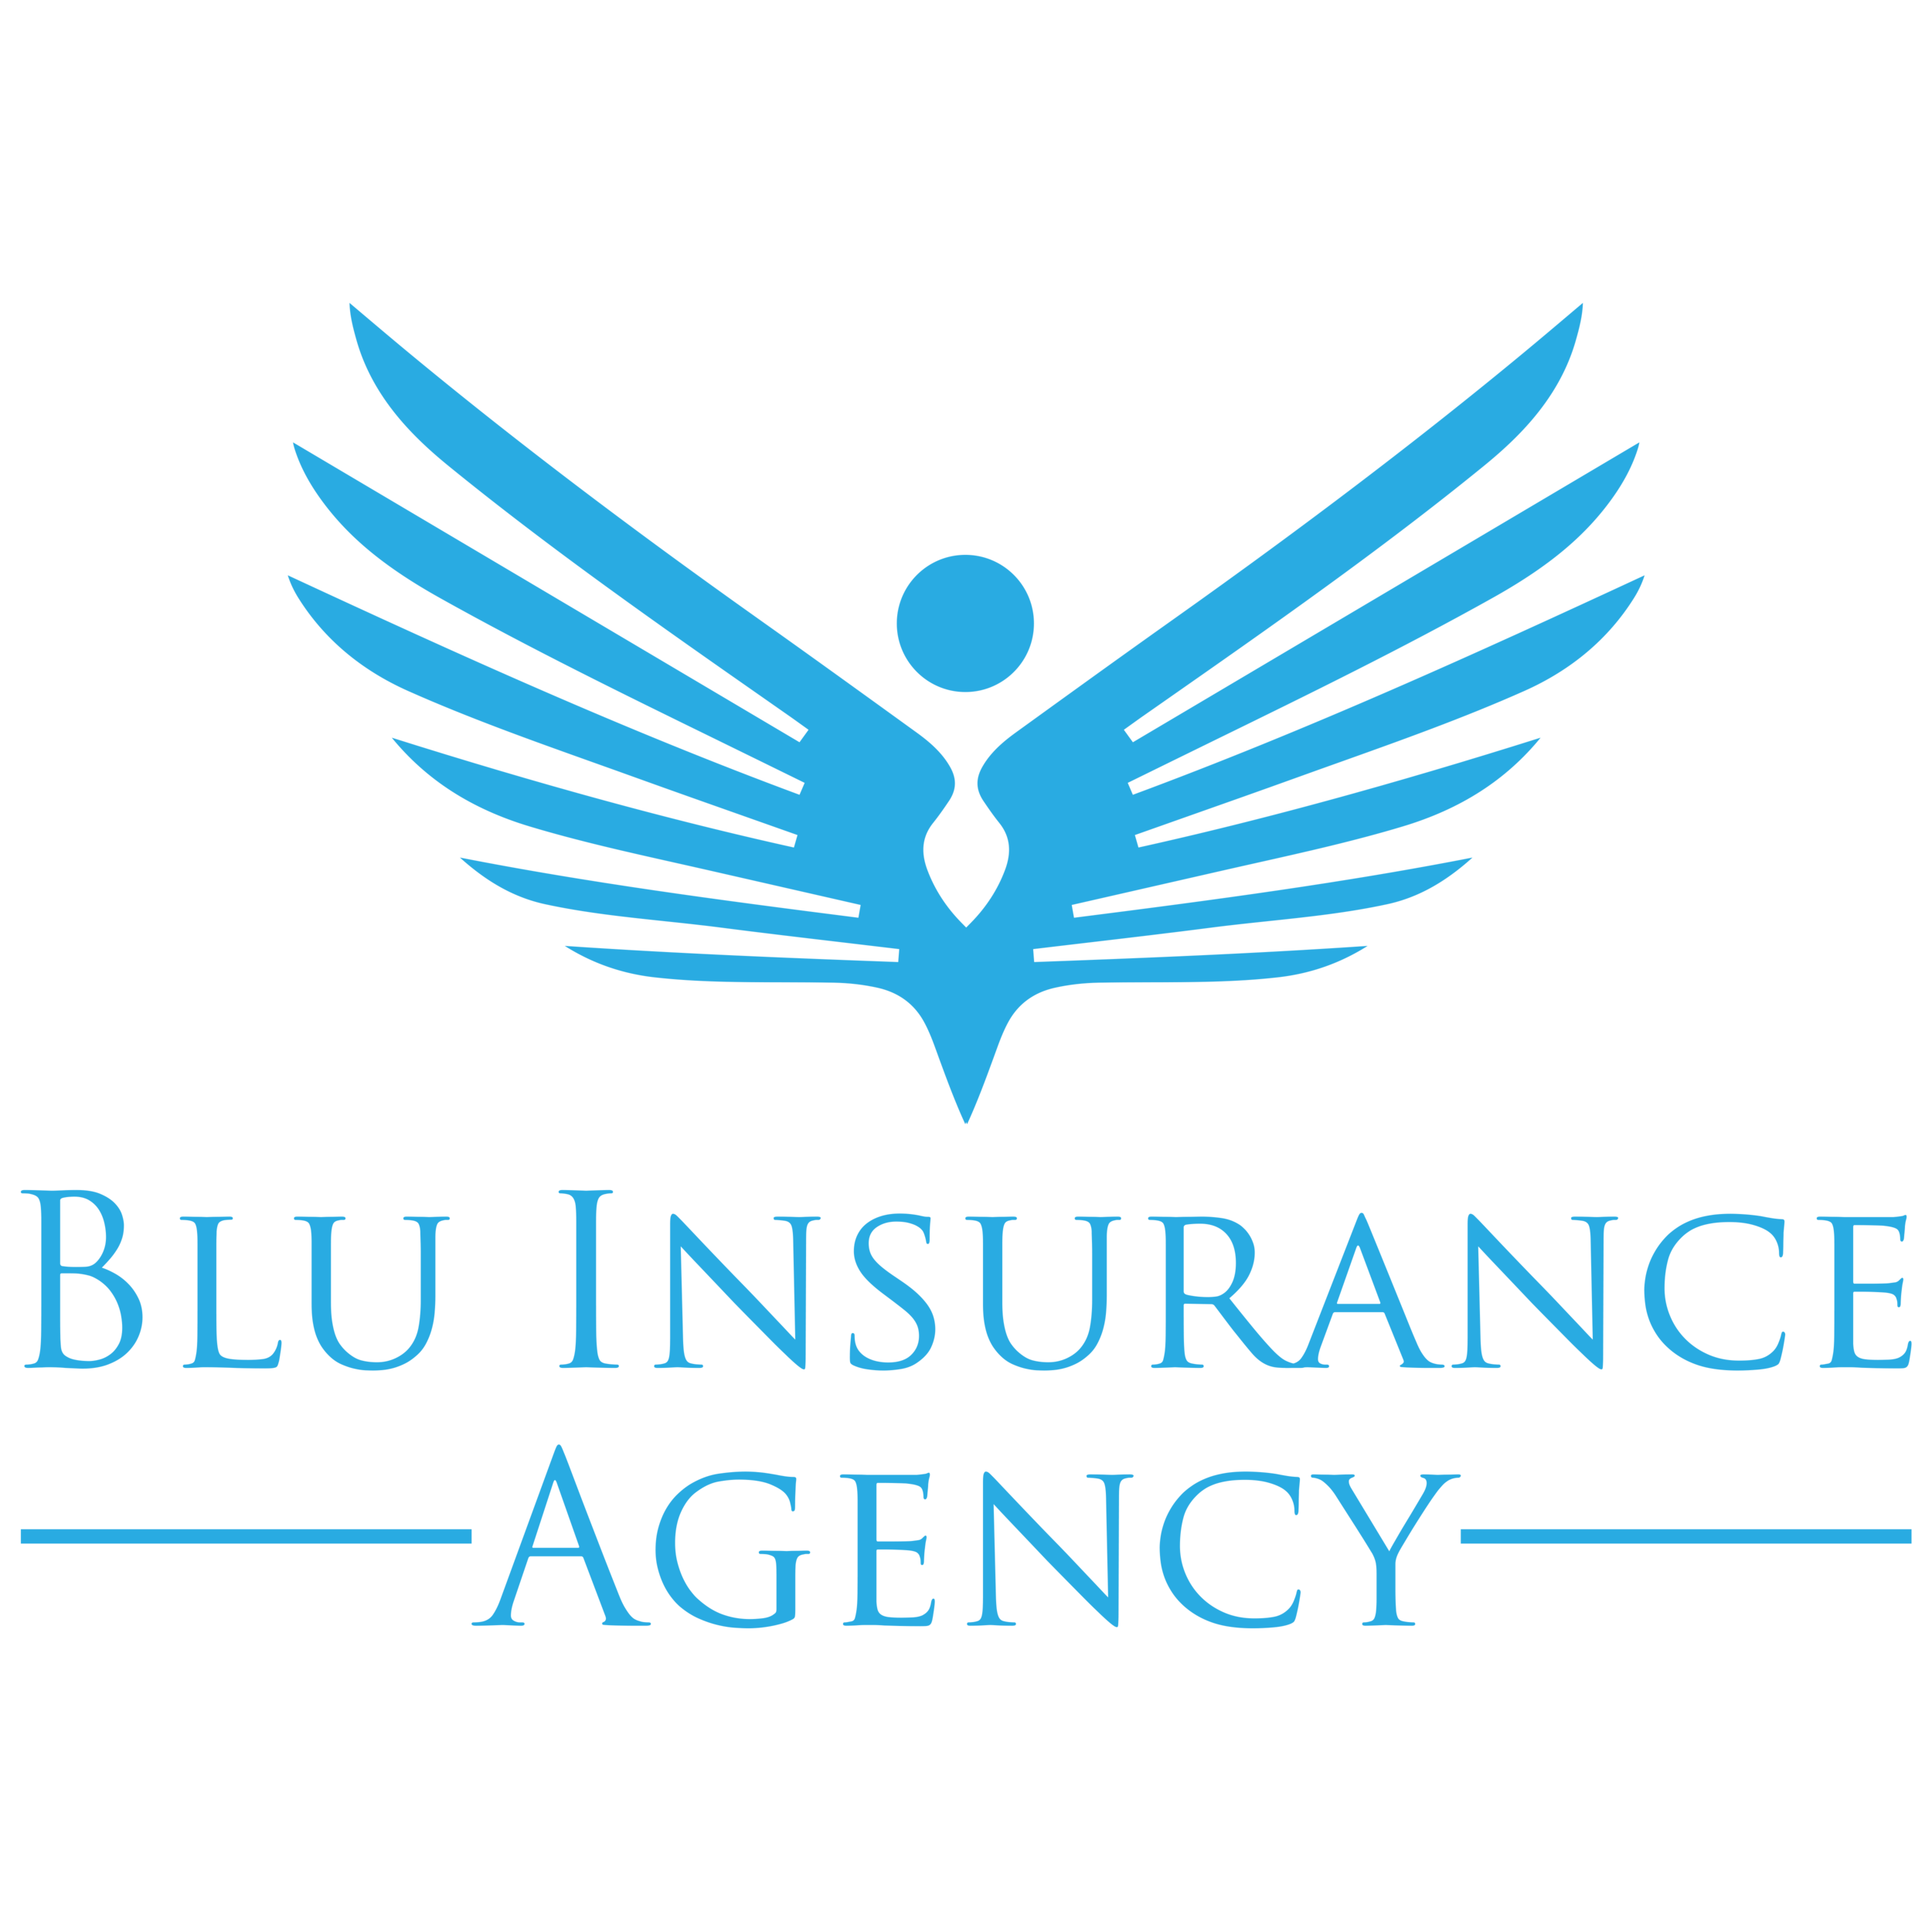 Blu Insurance Agency